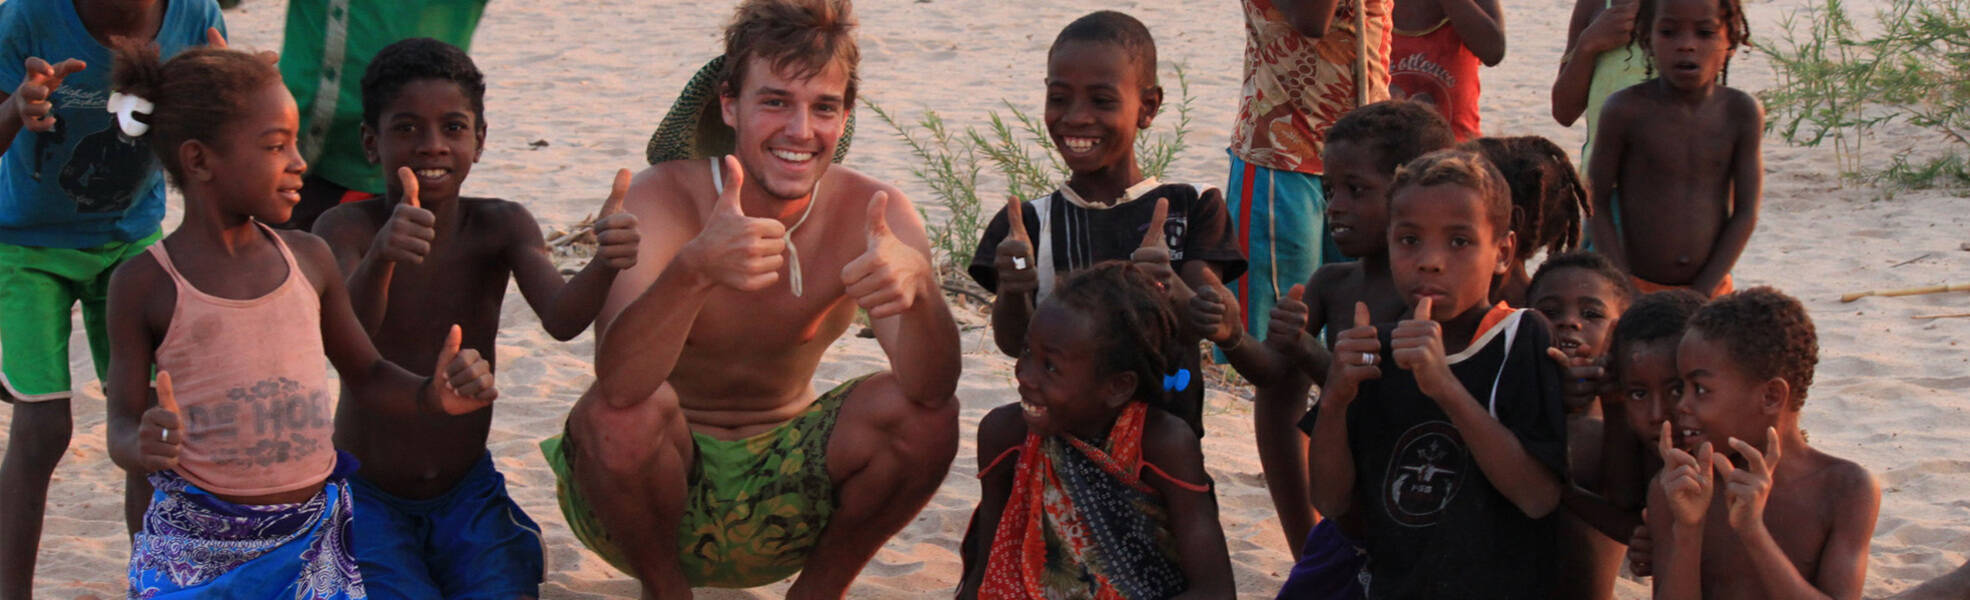 Praktikum im Ausland mit Kindern am Strand von Südafrika 